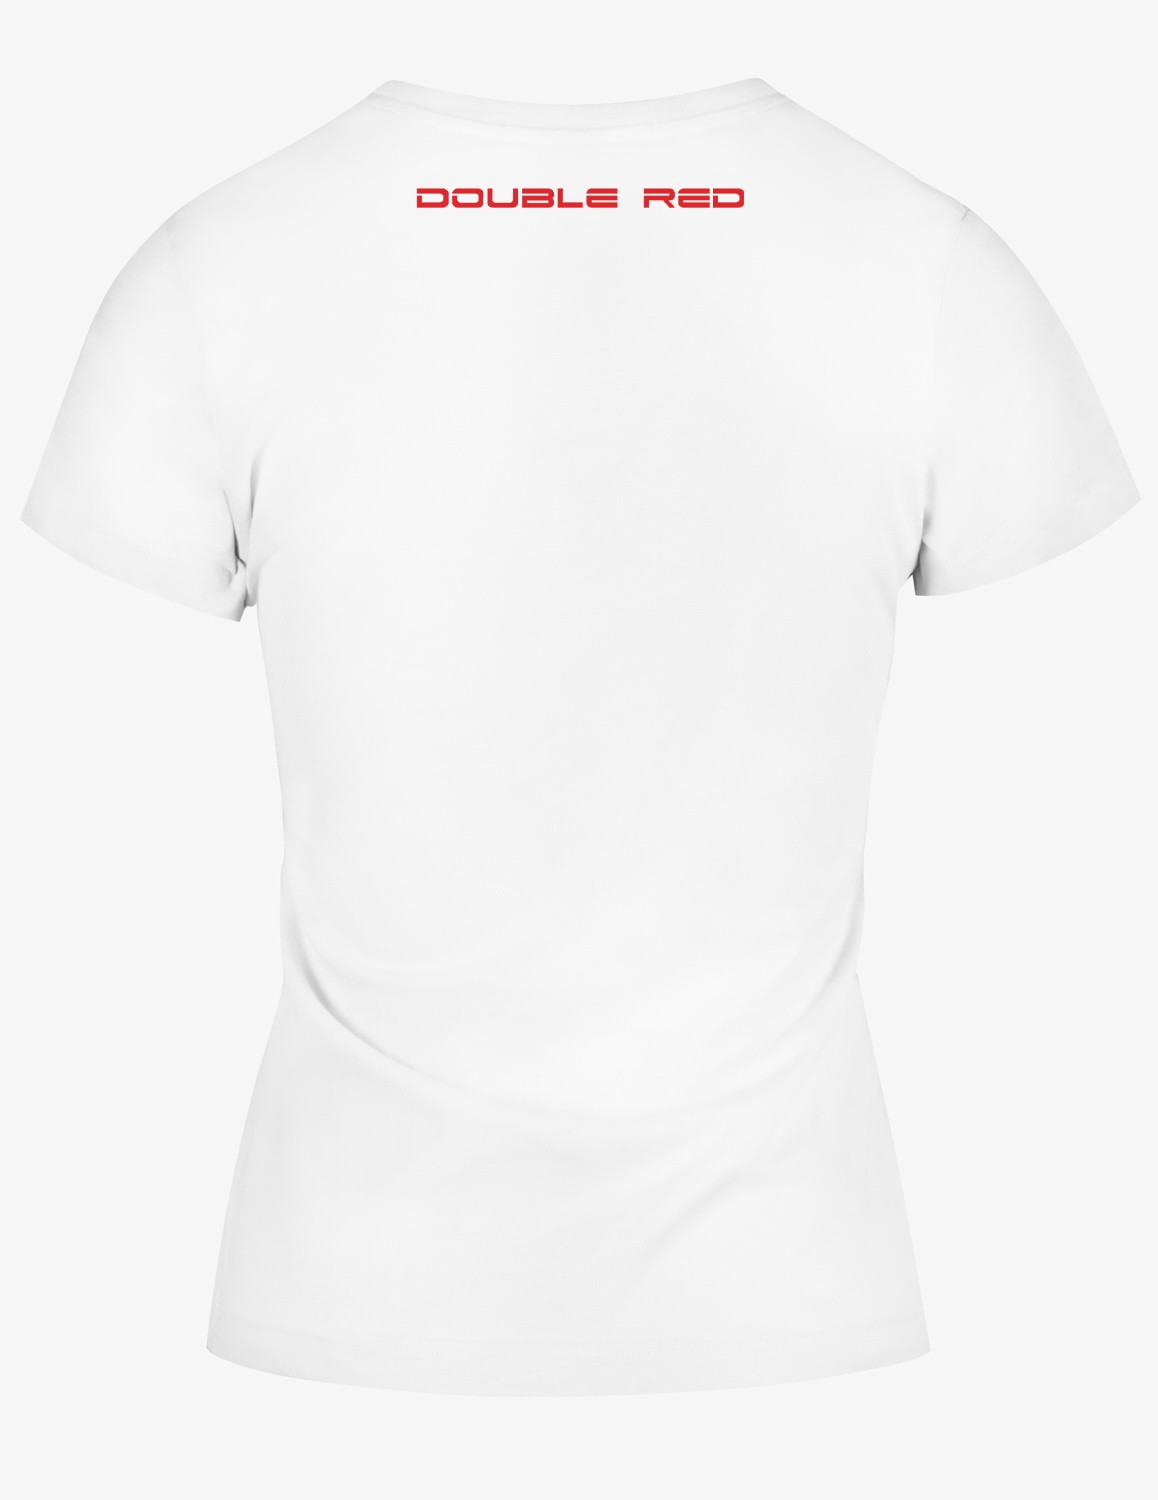 CARBONARO™ T-shirt White/Red